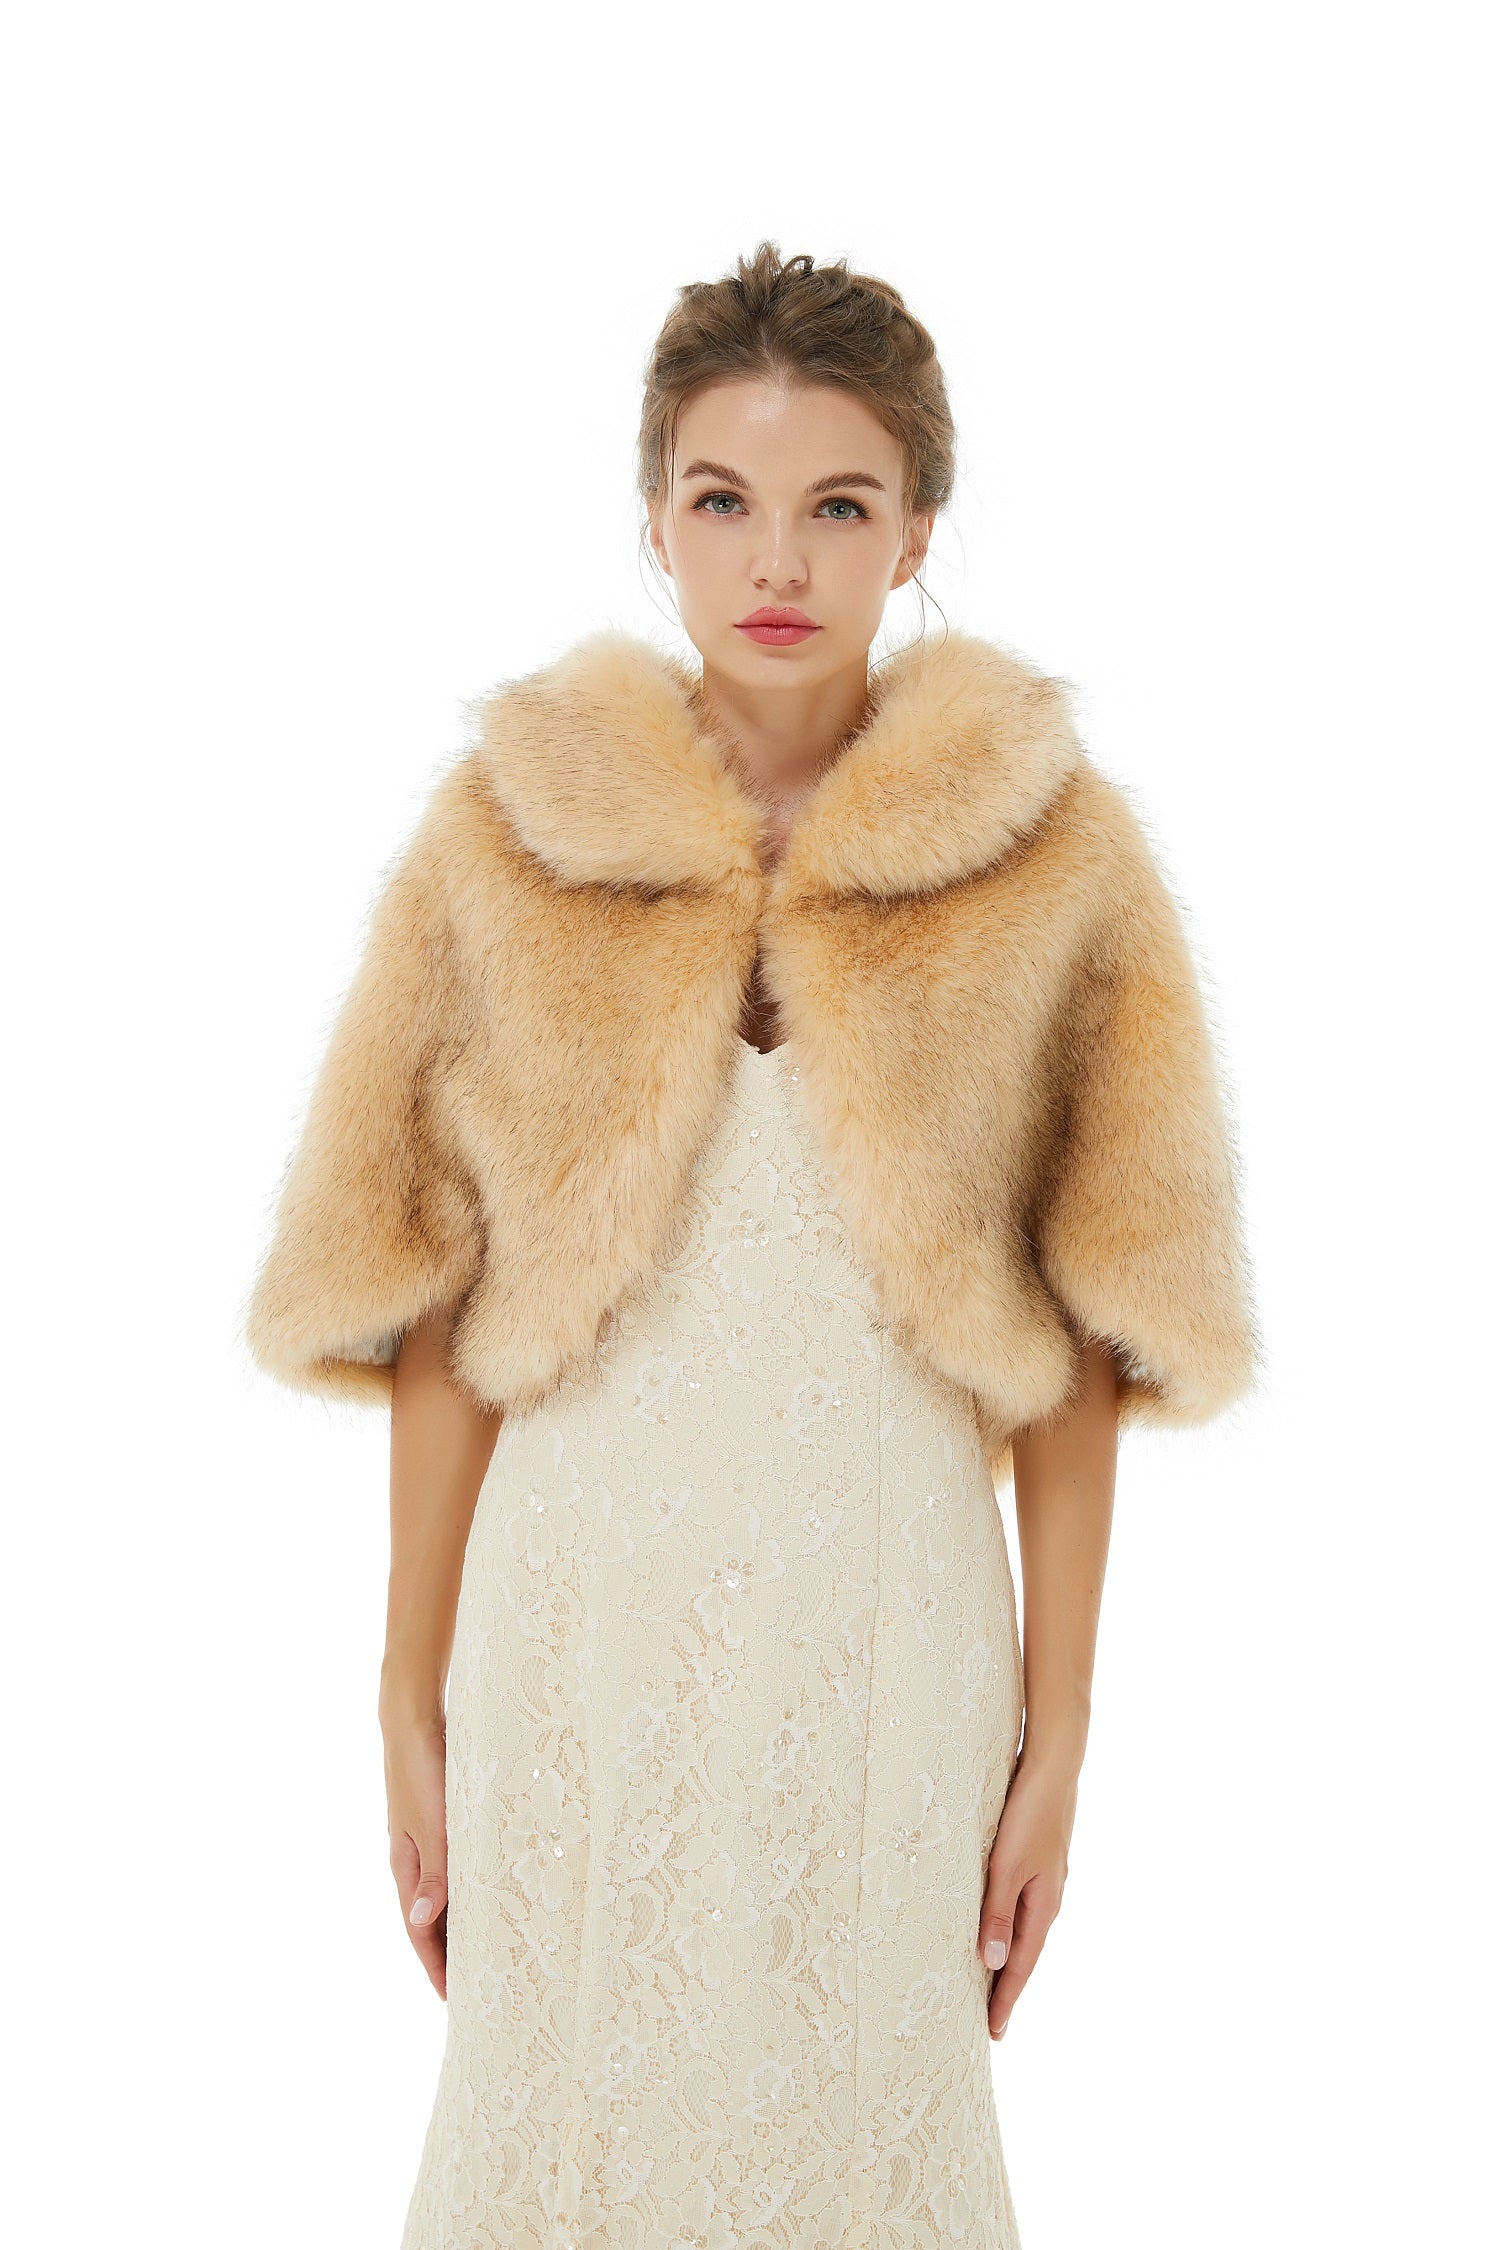 Dresseswow Faux Fur Wrap Bridal Wear Winter Jacket